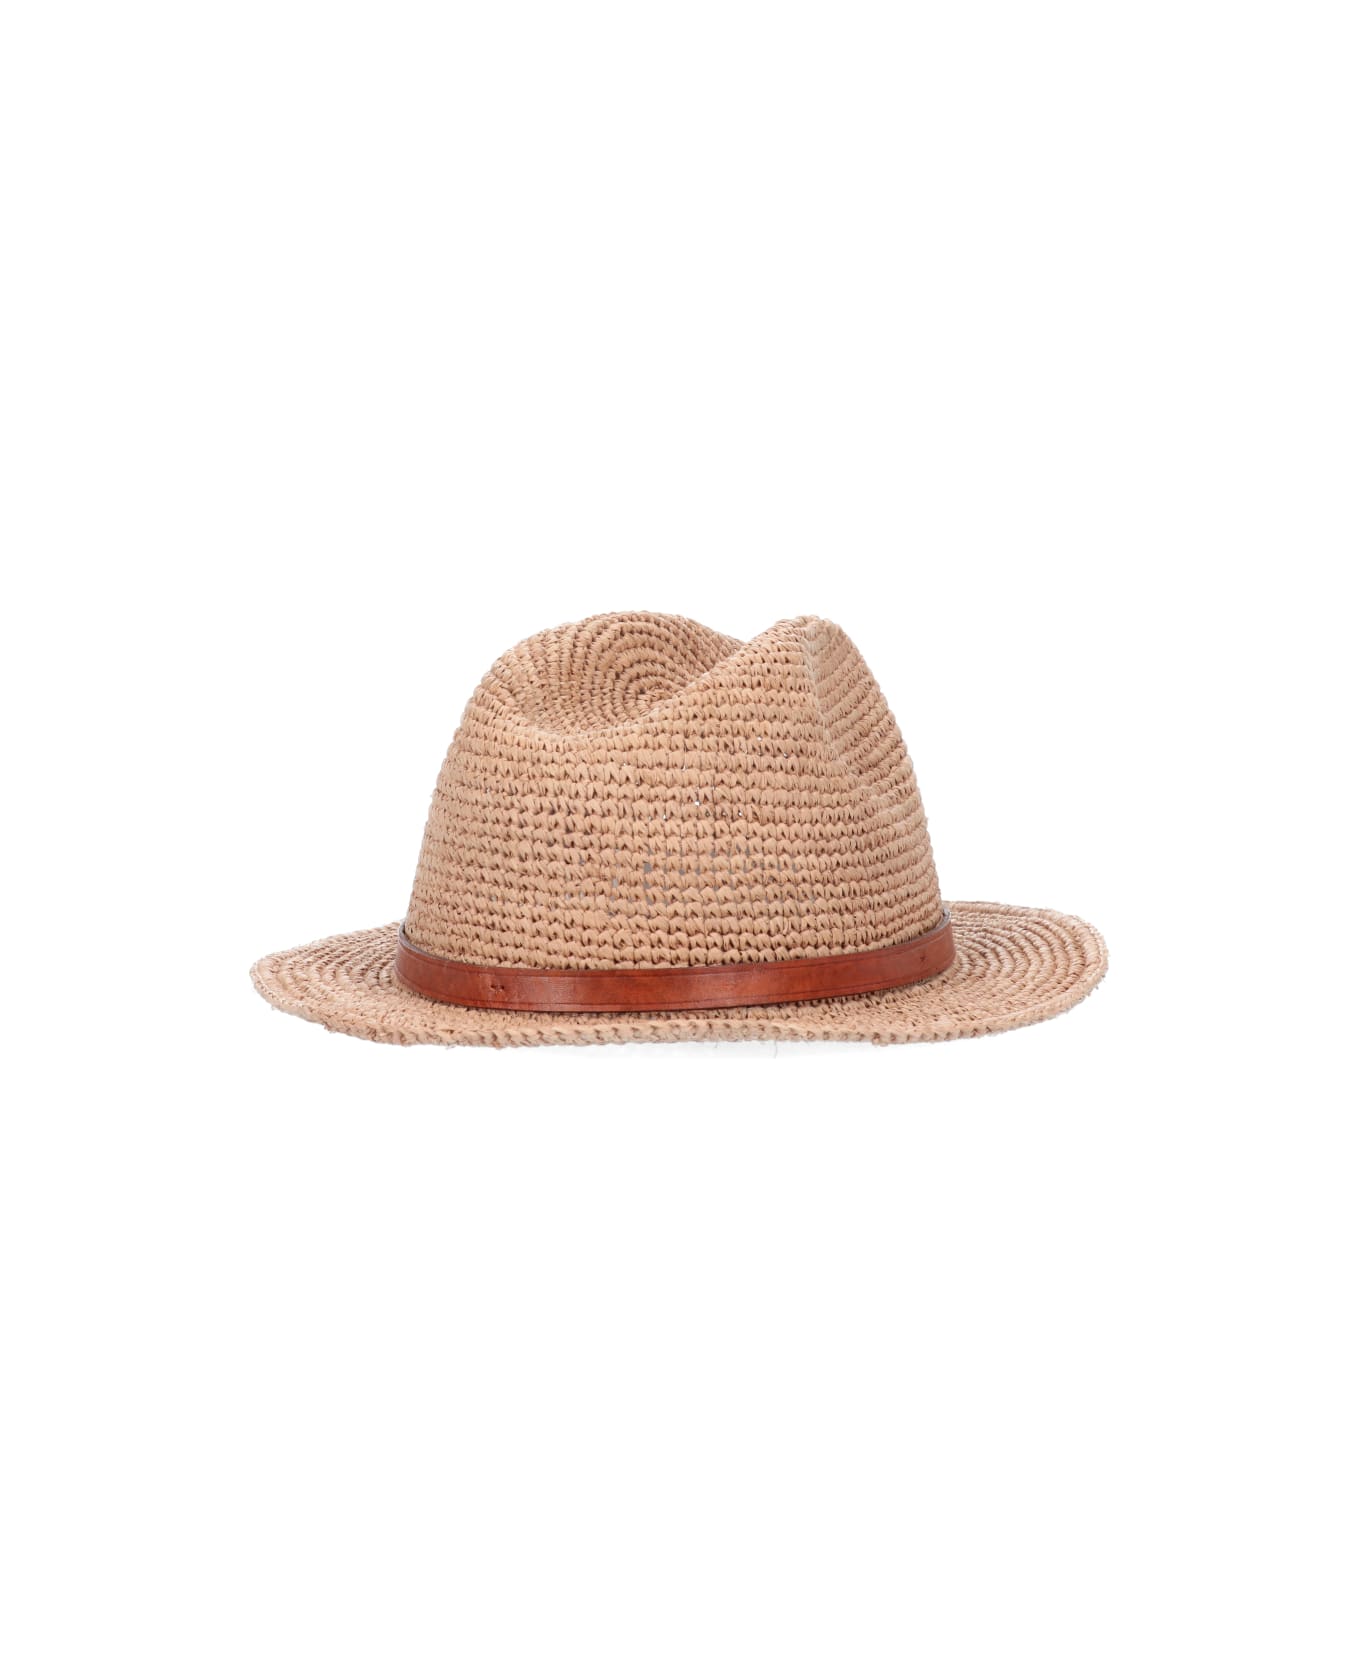 Ibeliv Hat - Tea 帽子